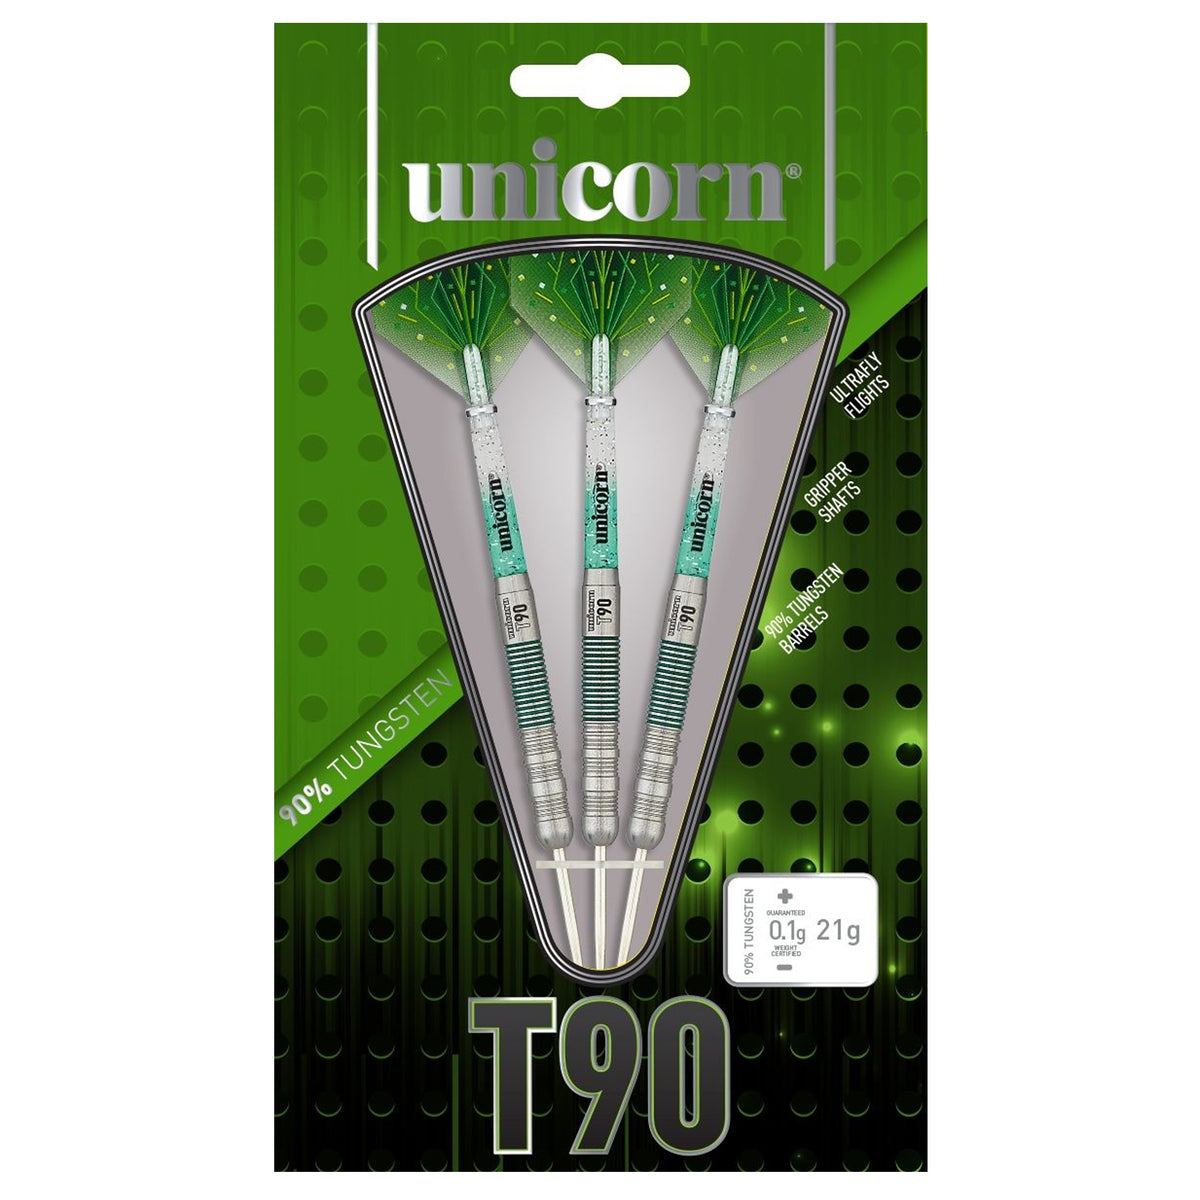 Unicorn Darts T90 Core XL Tungsten